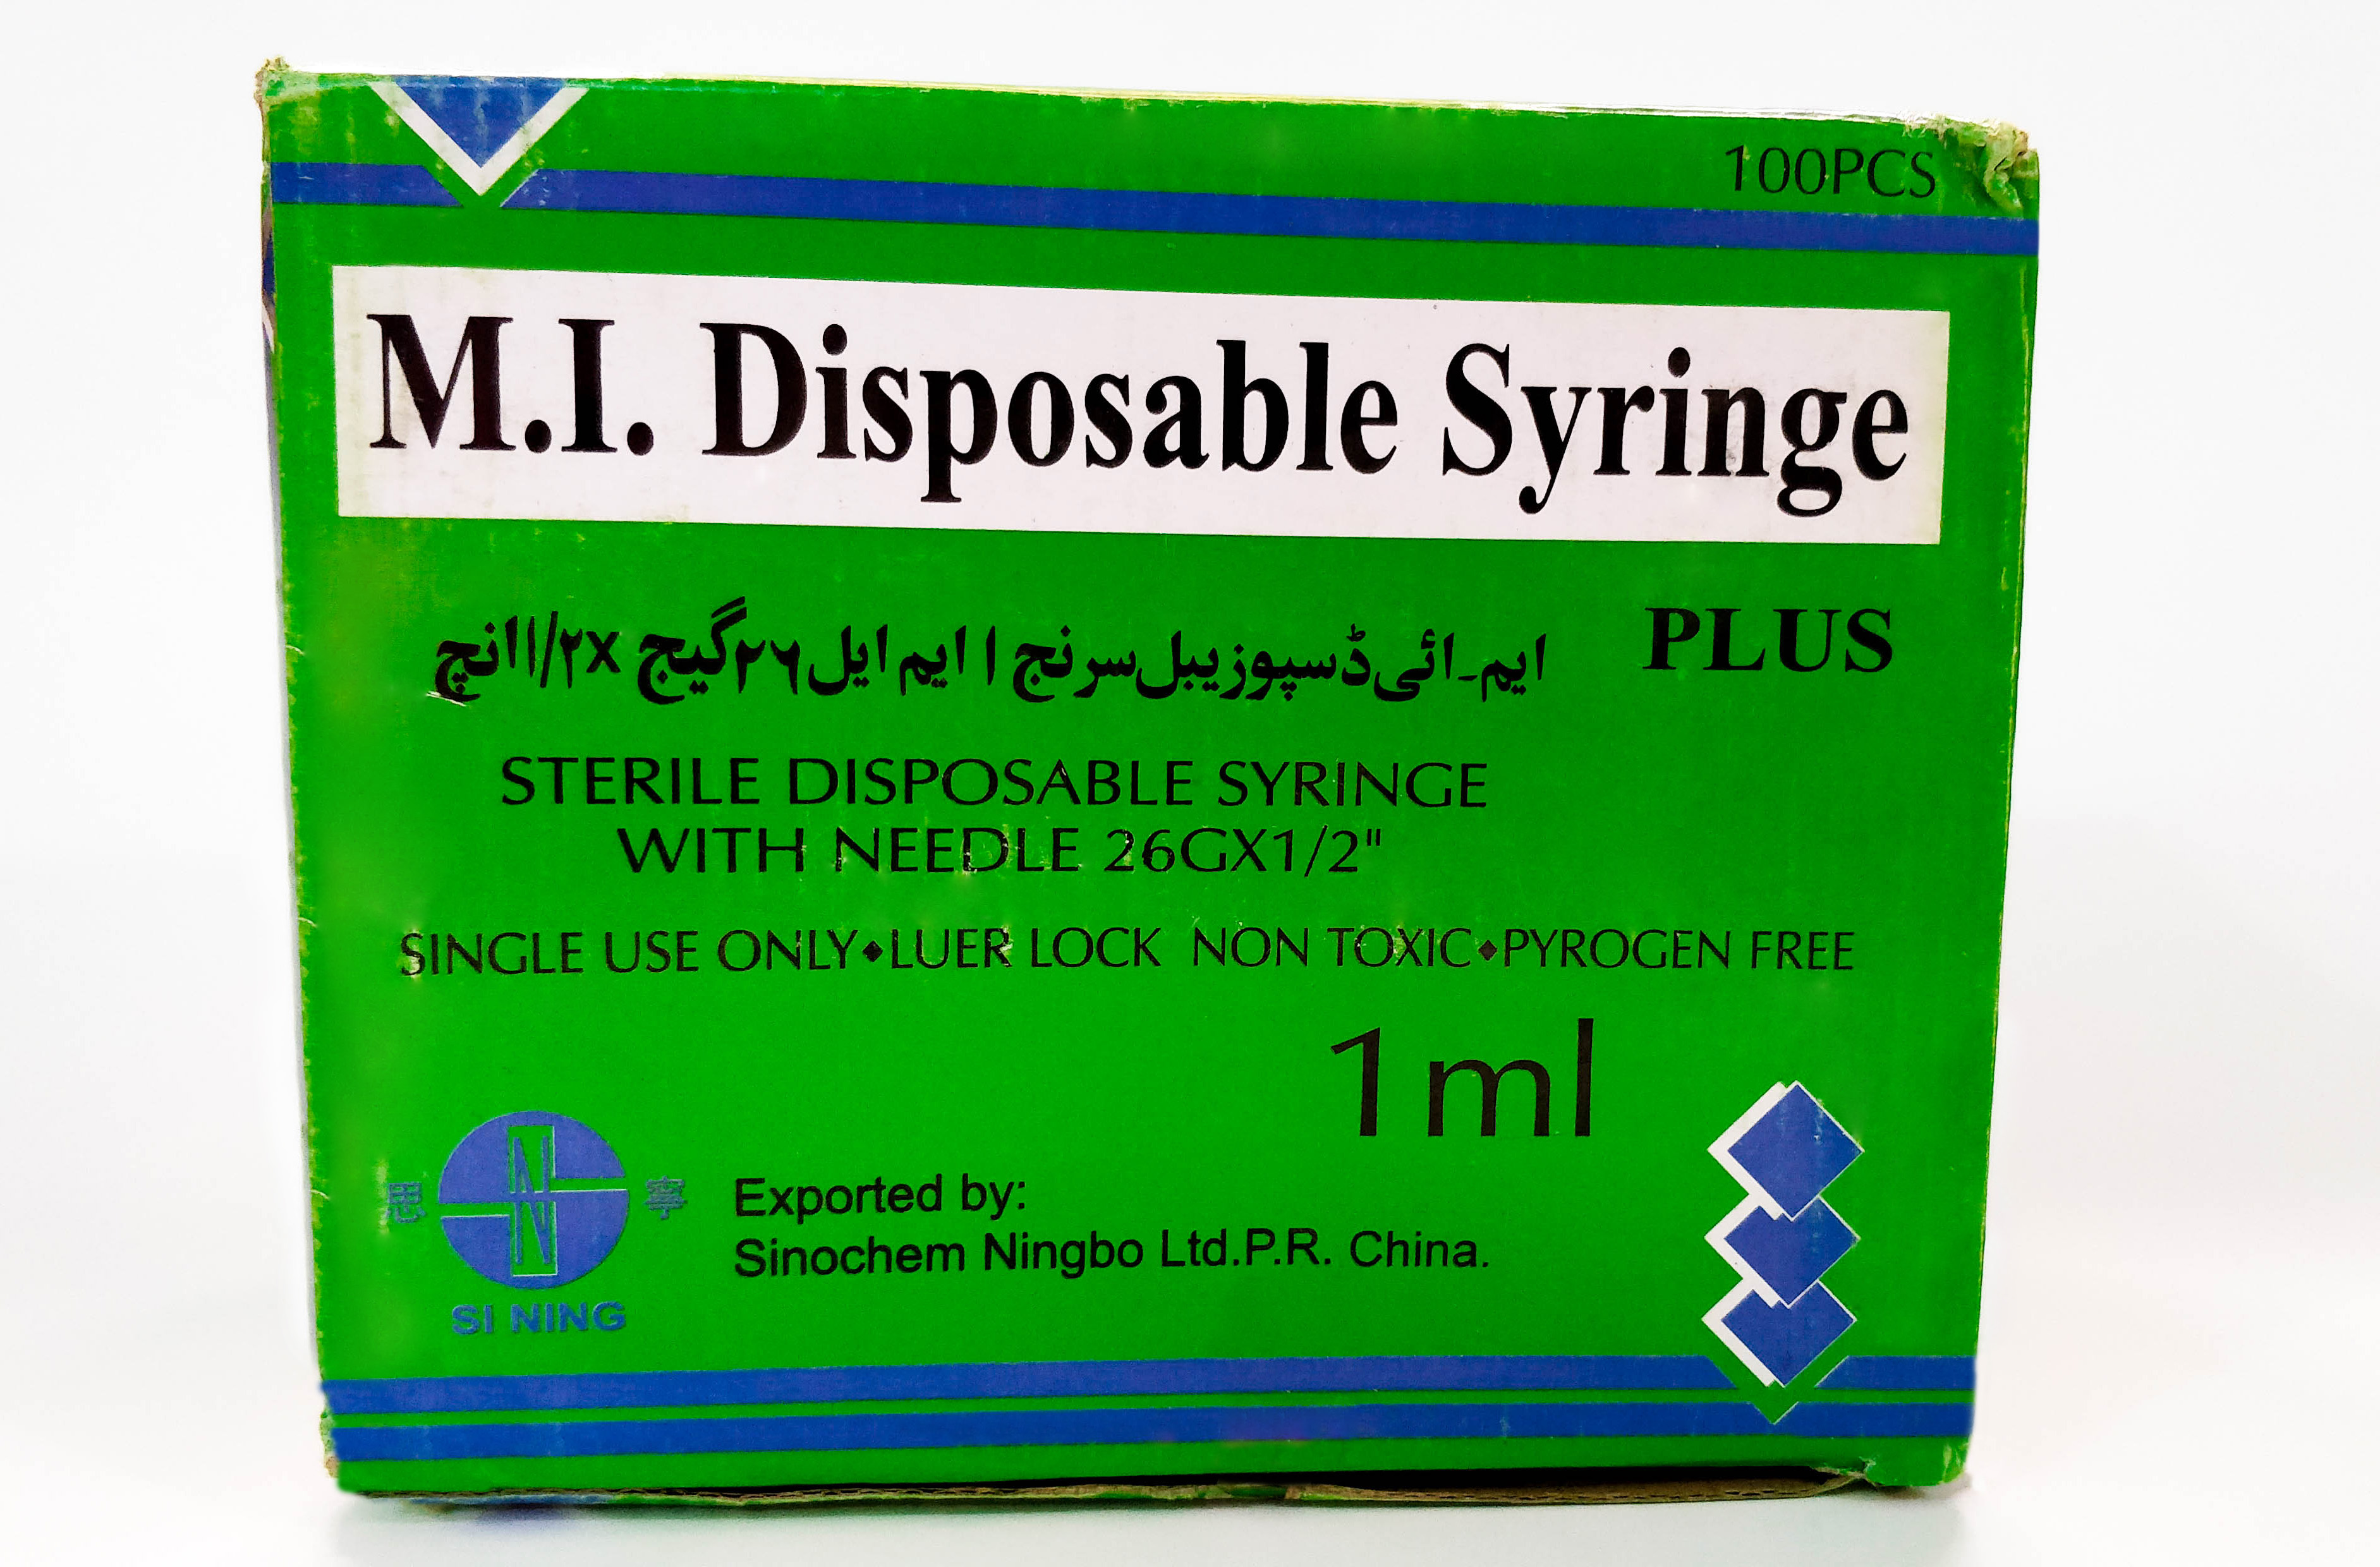 M.I. Syringe 1ml plus